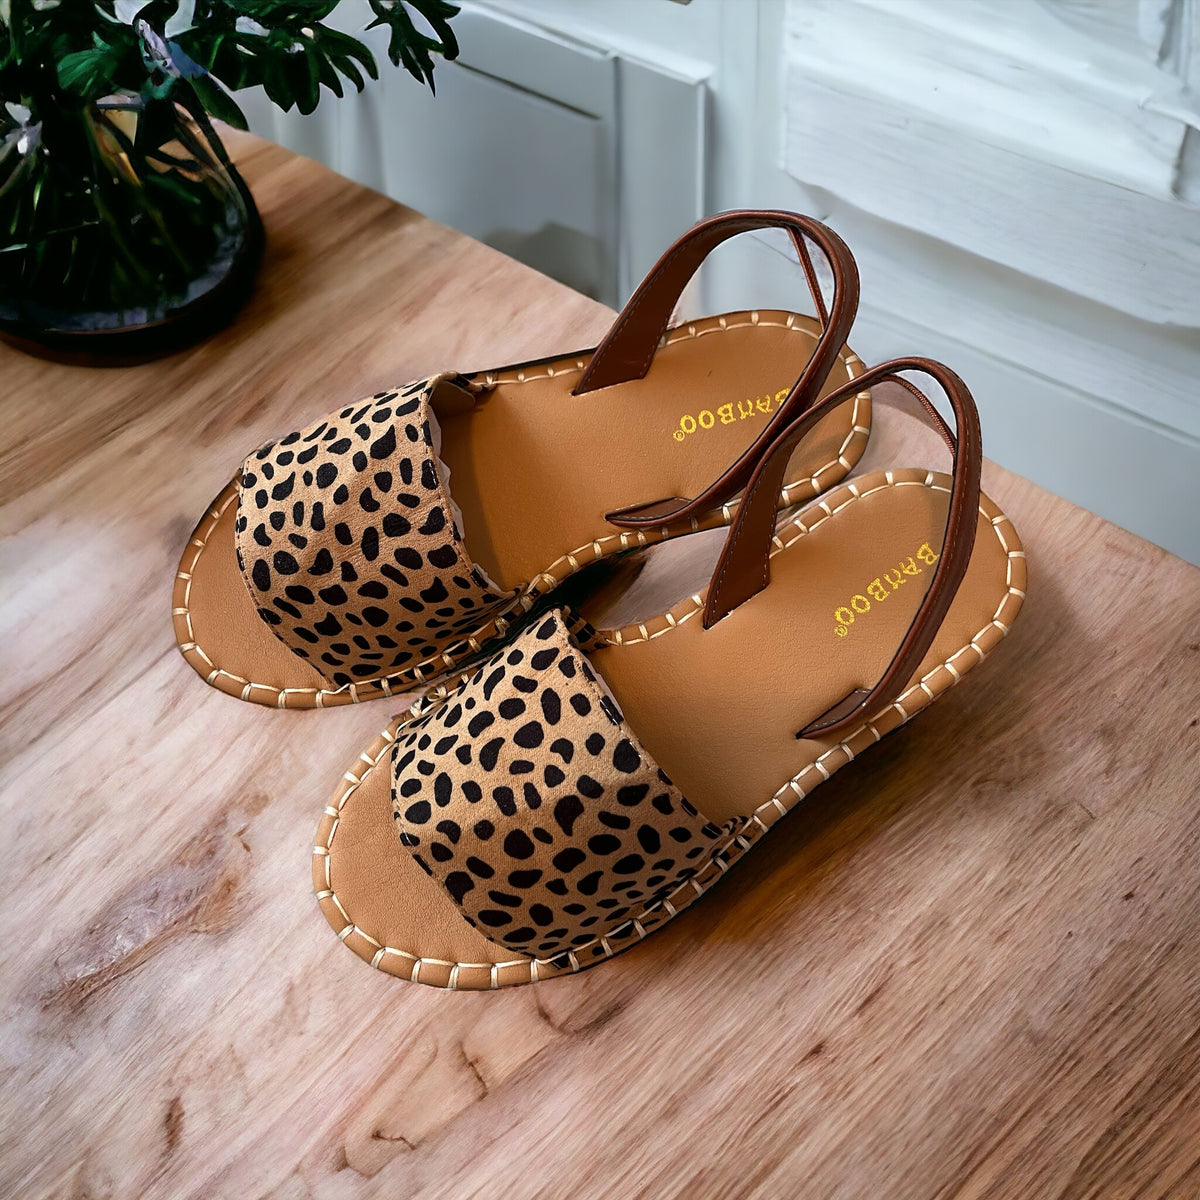 Bamboo Cheetah Sling Back Shoes